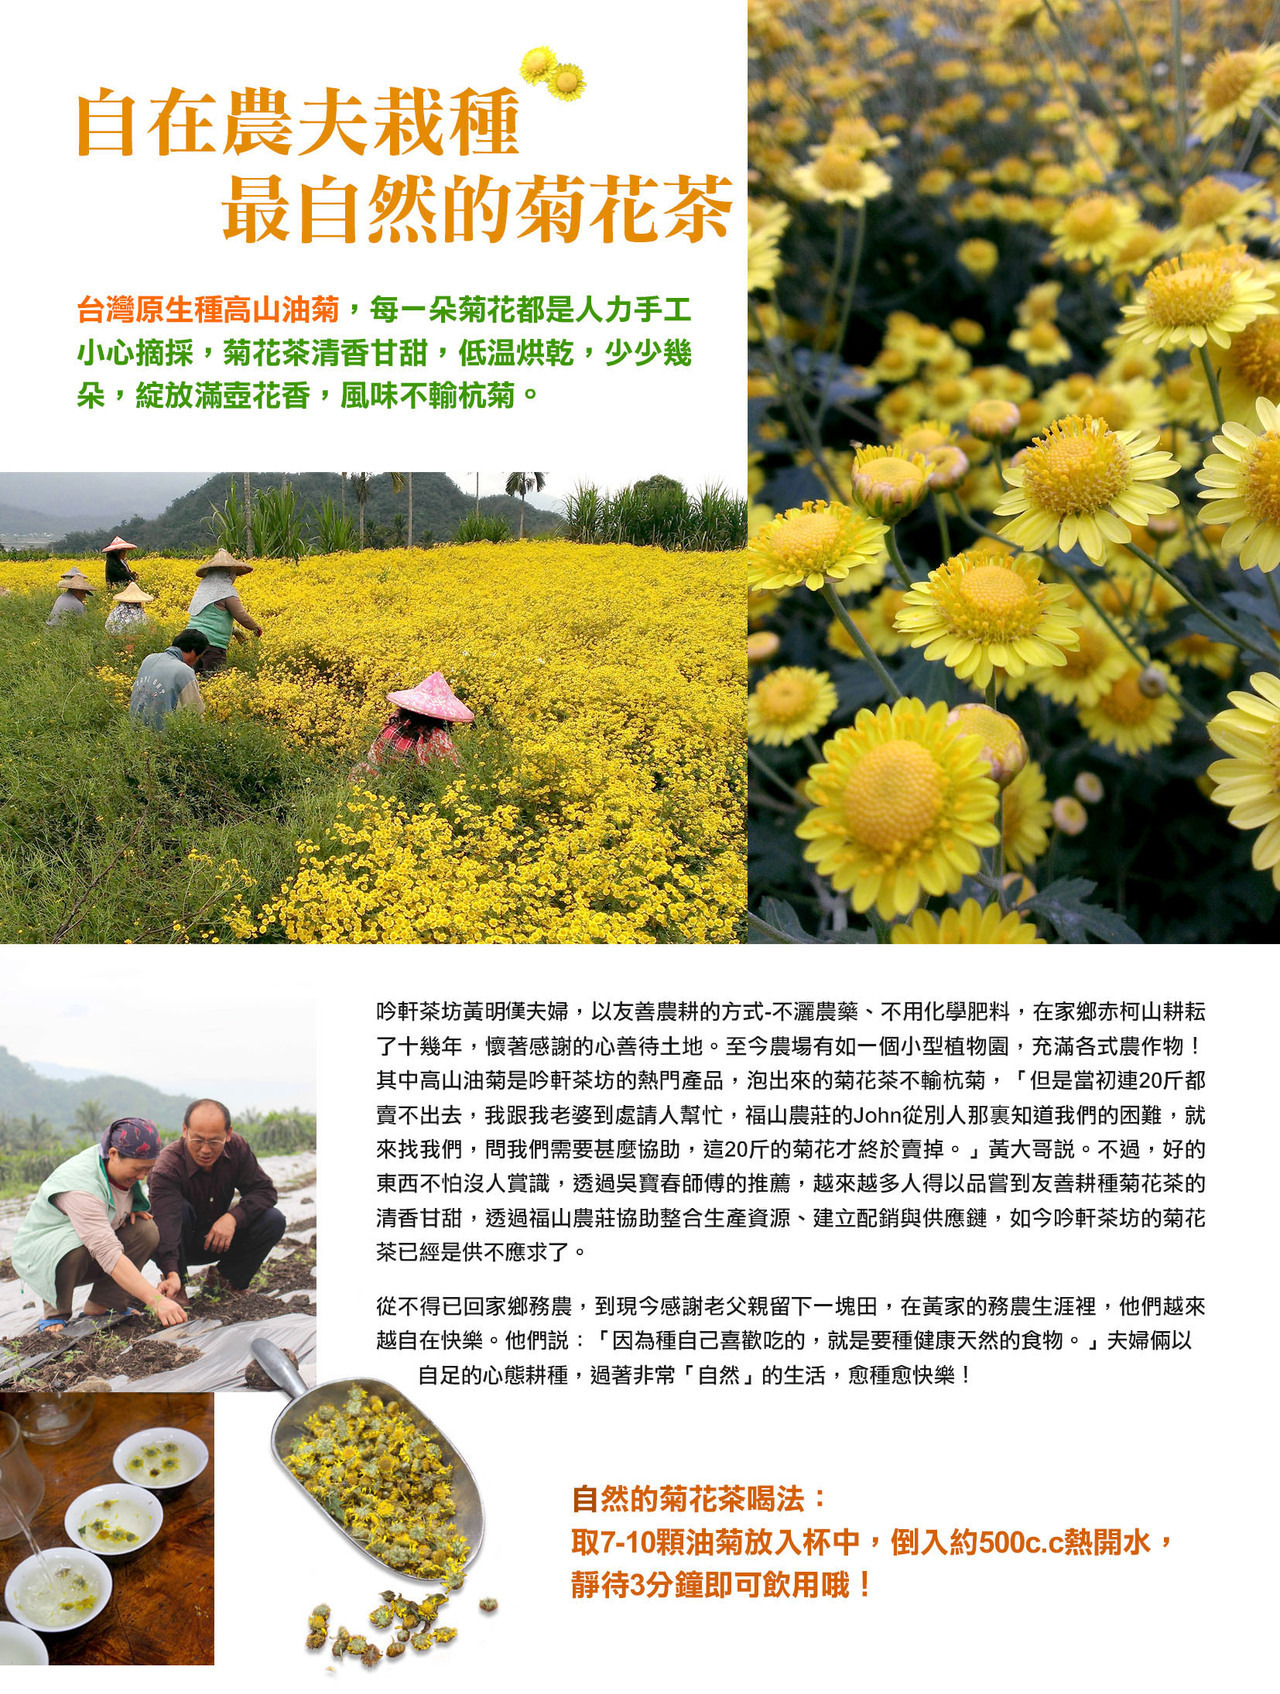 台灣原生種高山油菊,赤柯山,耕好友善農產,